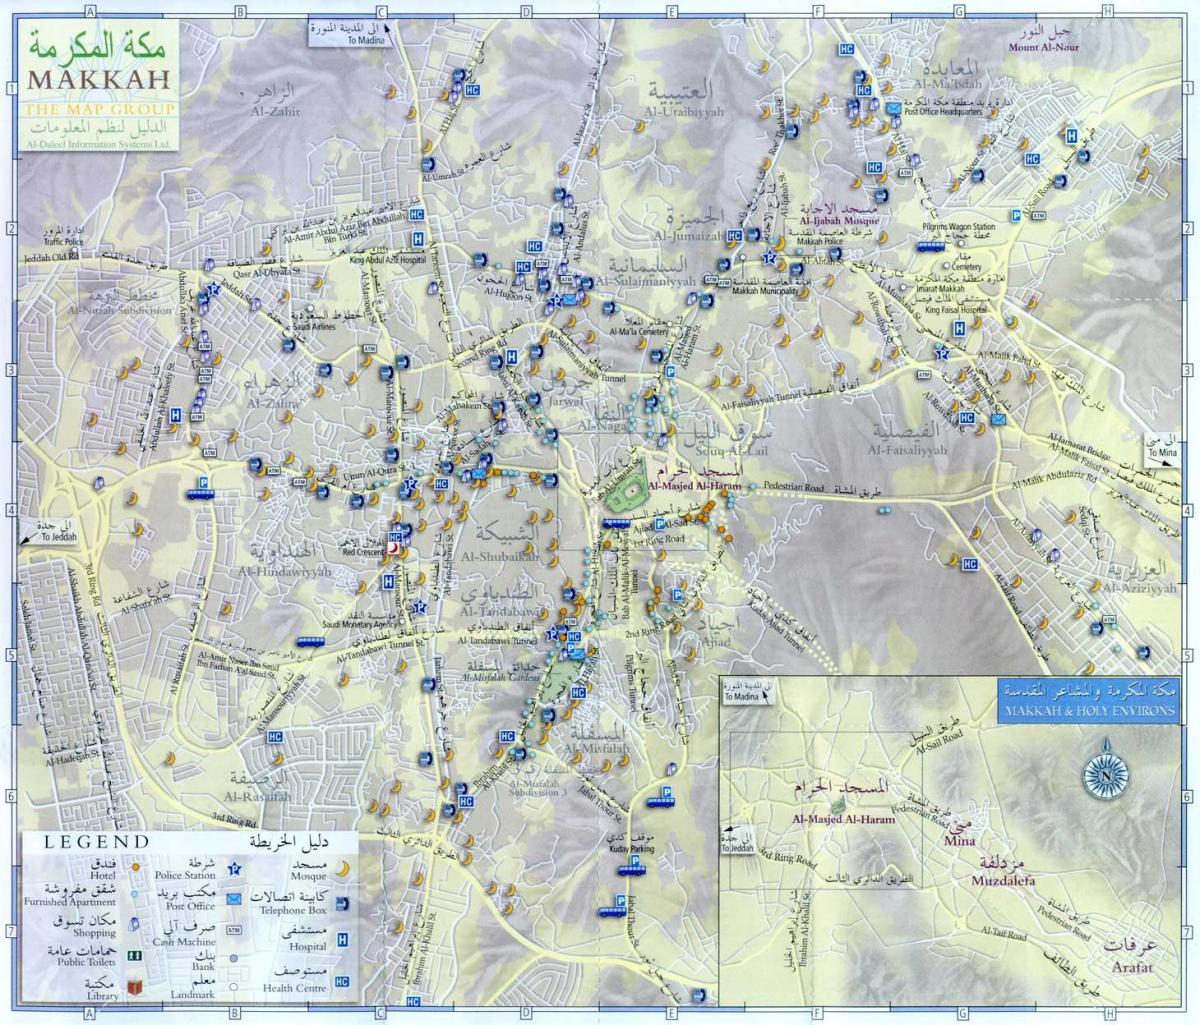  map of Makkah ziyarat places